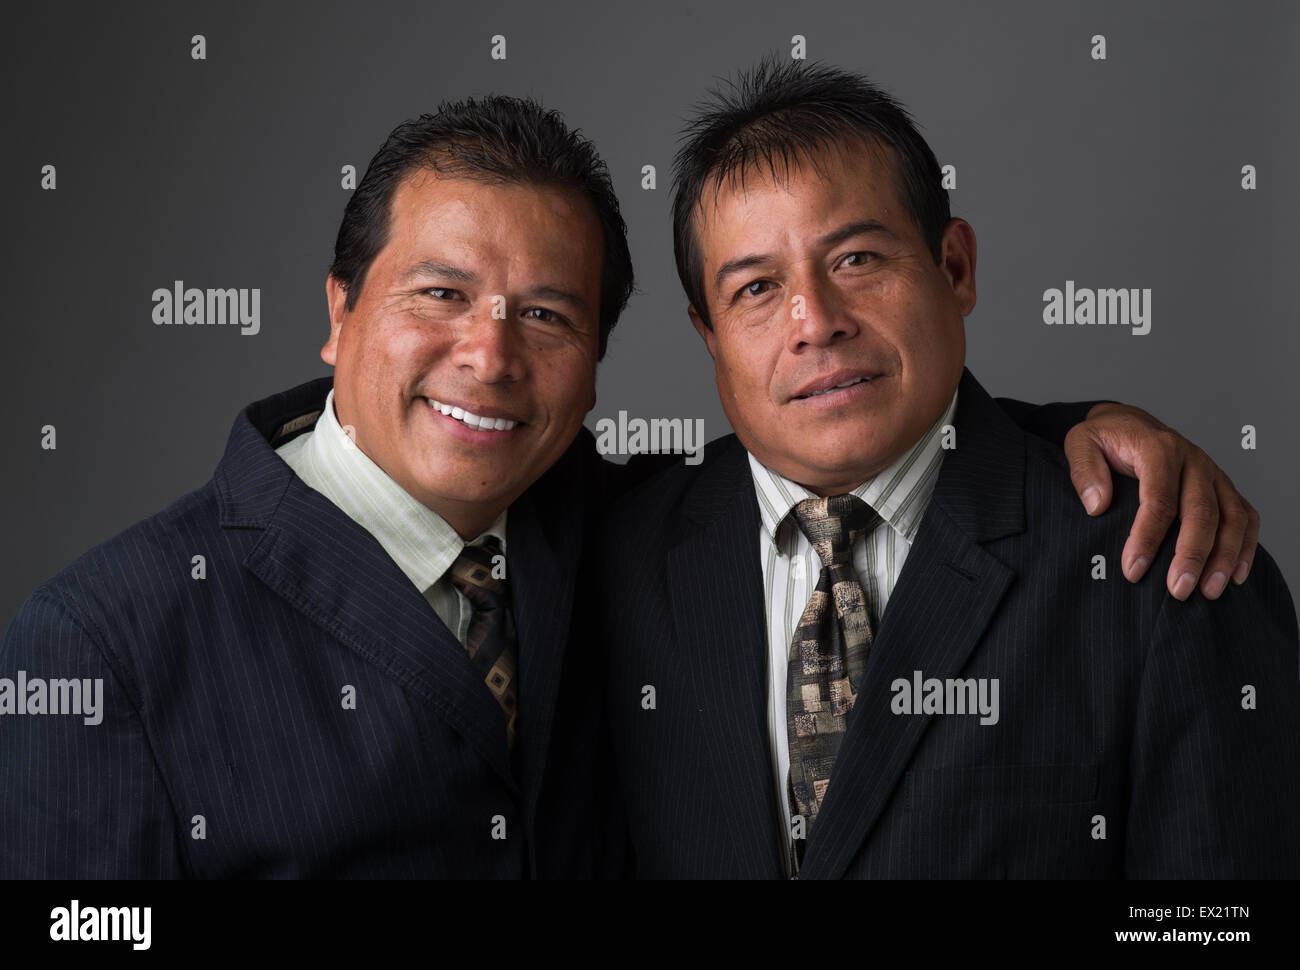 Hispanic Business hombres sonrientes vestidos de traje y corbata de negocios, posando para un retrato Foto de stock